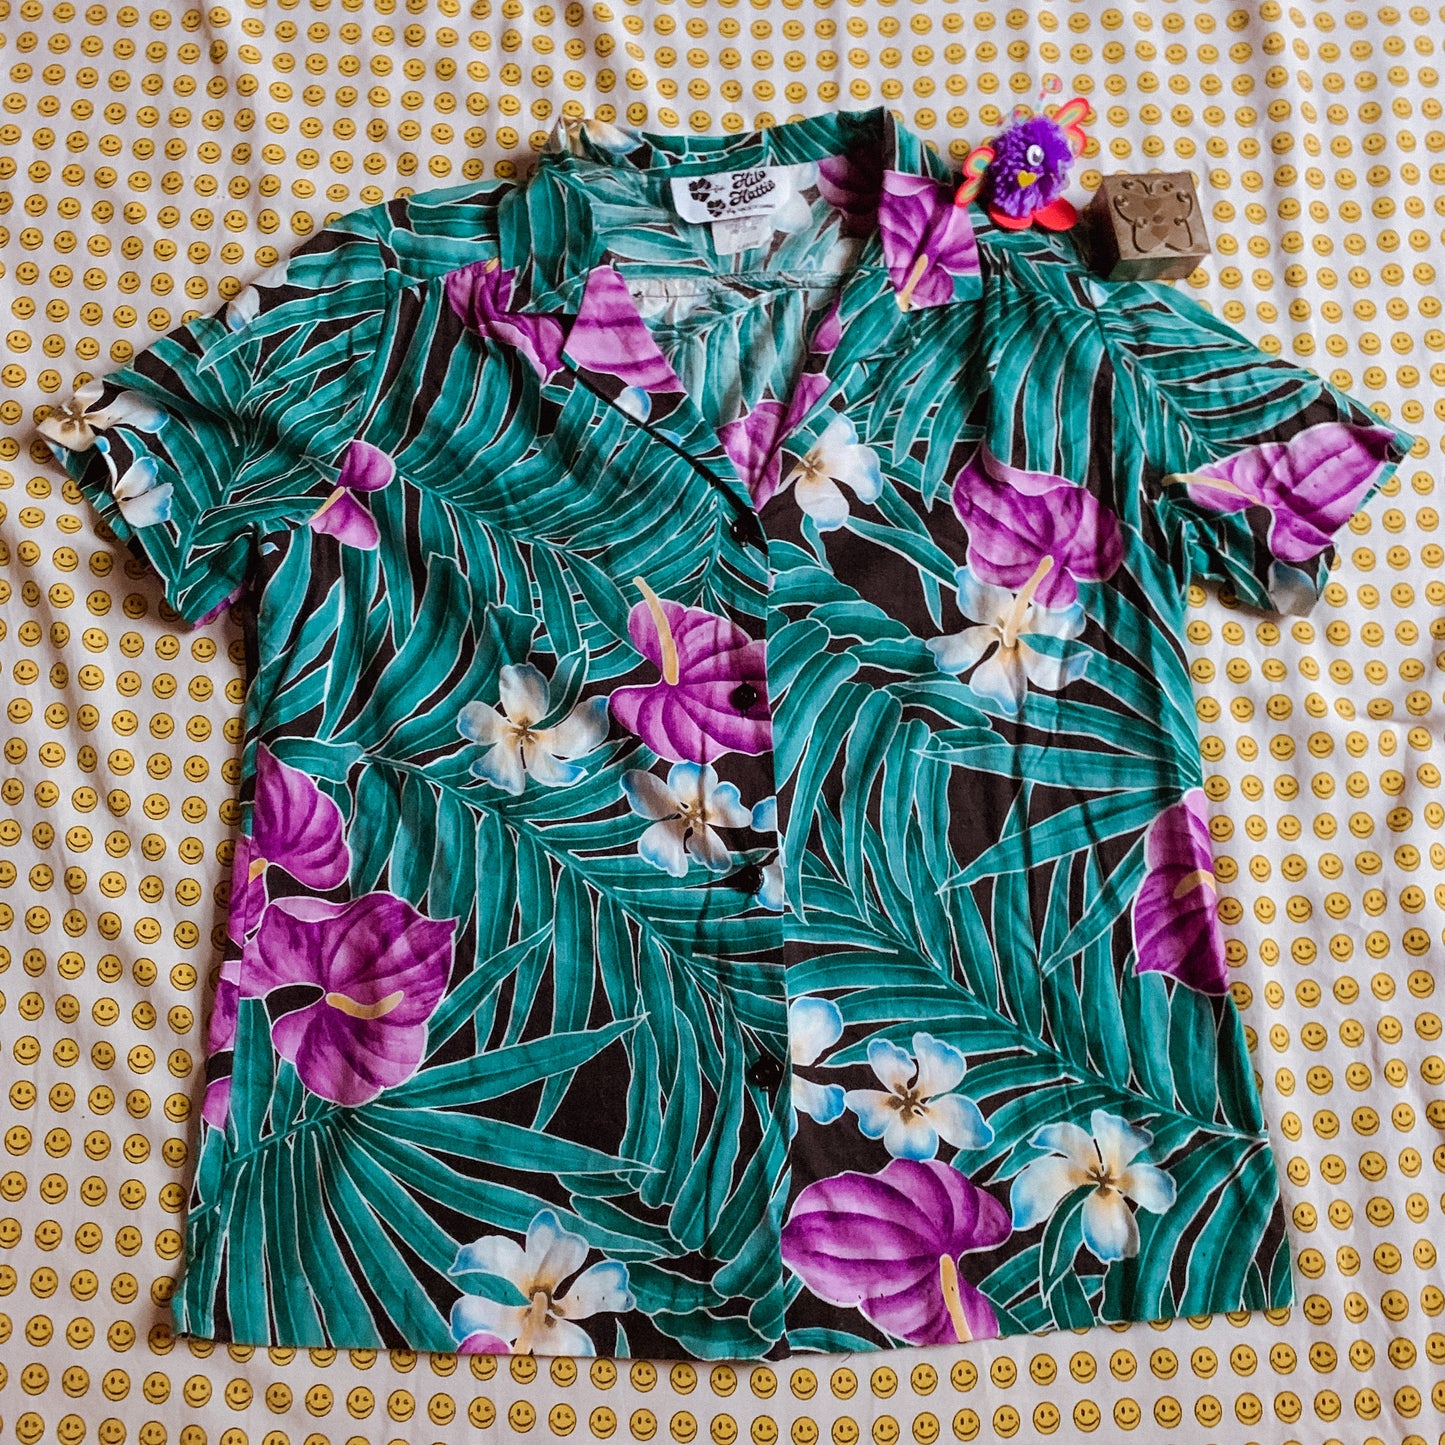 70's/80's green + purple hawaiian shirt (S-L)